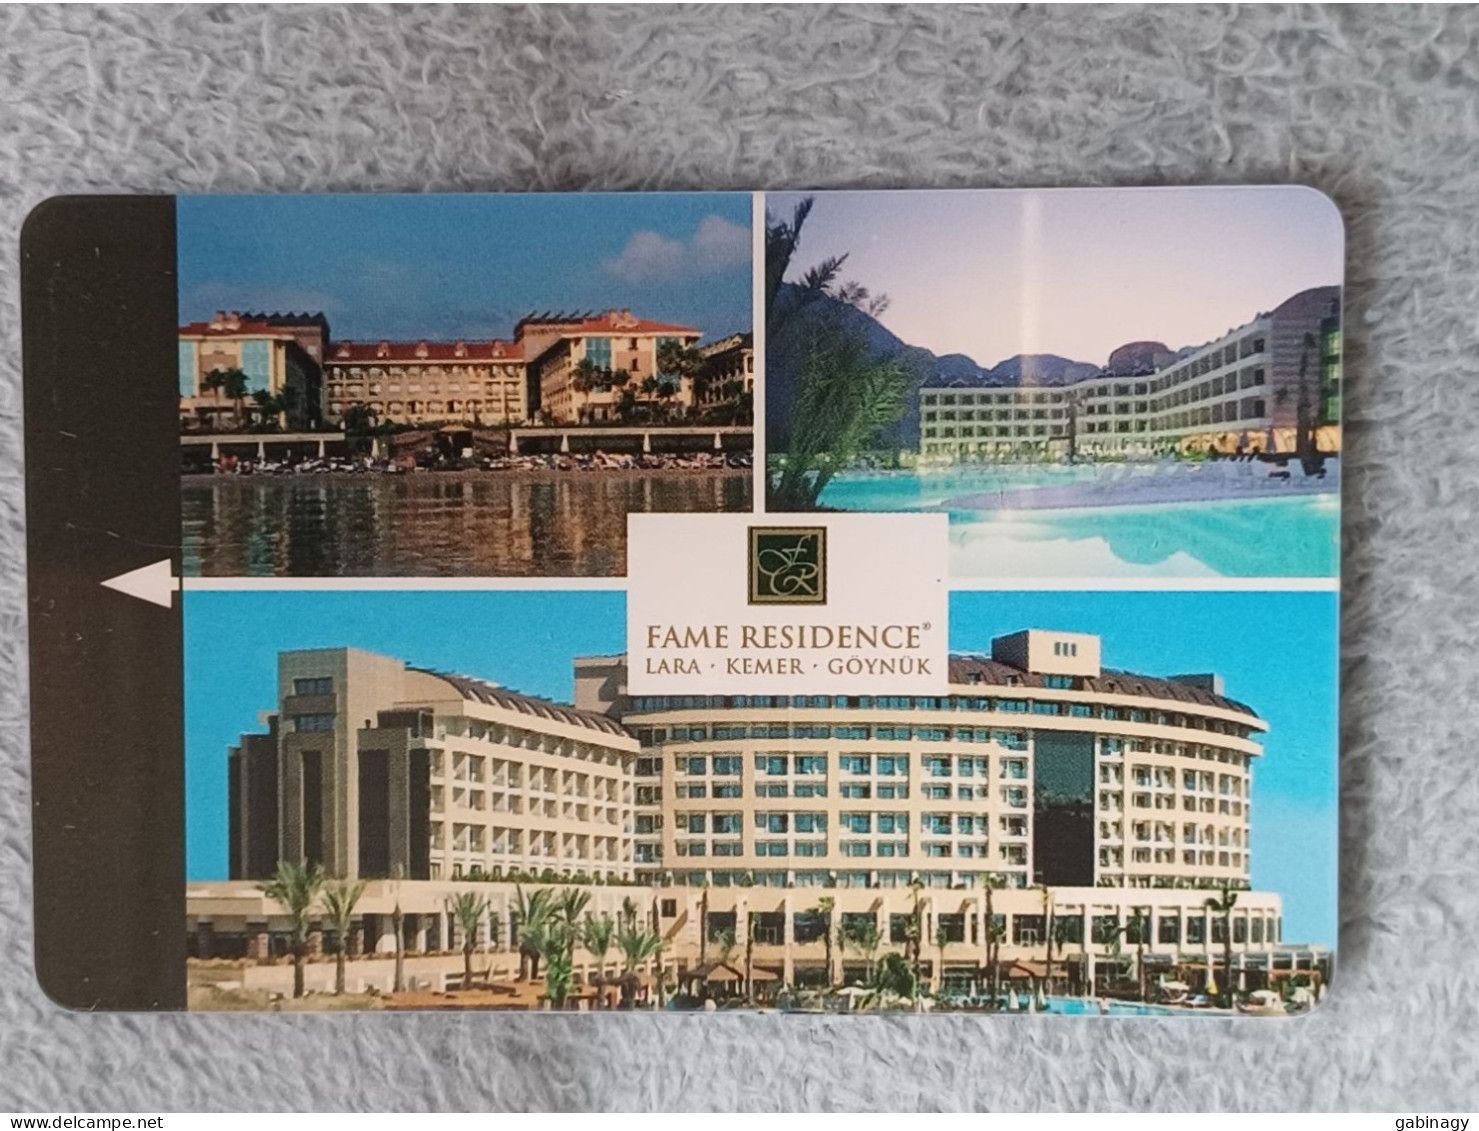 HOTEL KEYS - 2533 - TURKEY - FAME RESIDENCE - Hotelsleutels (kaarten)